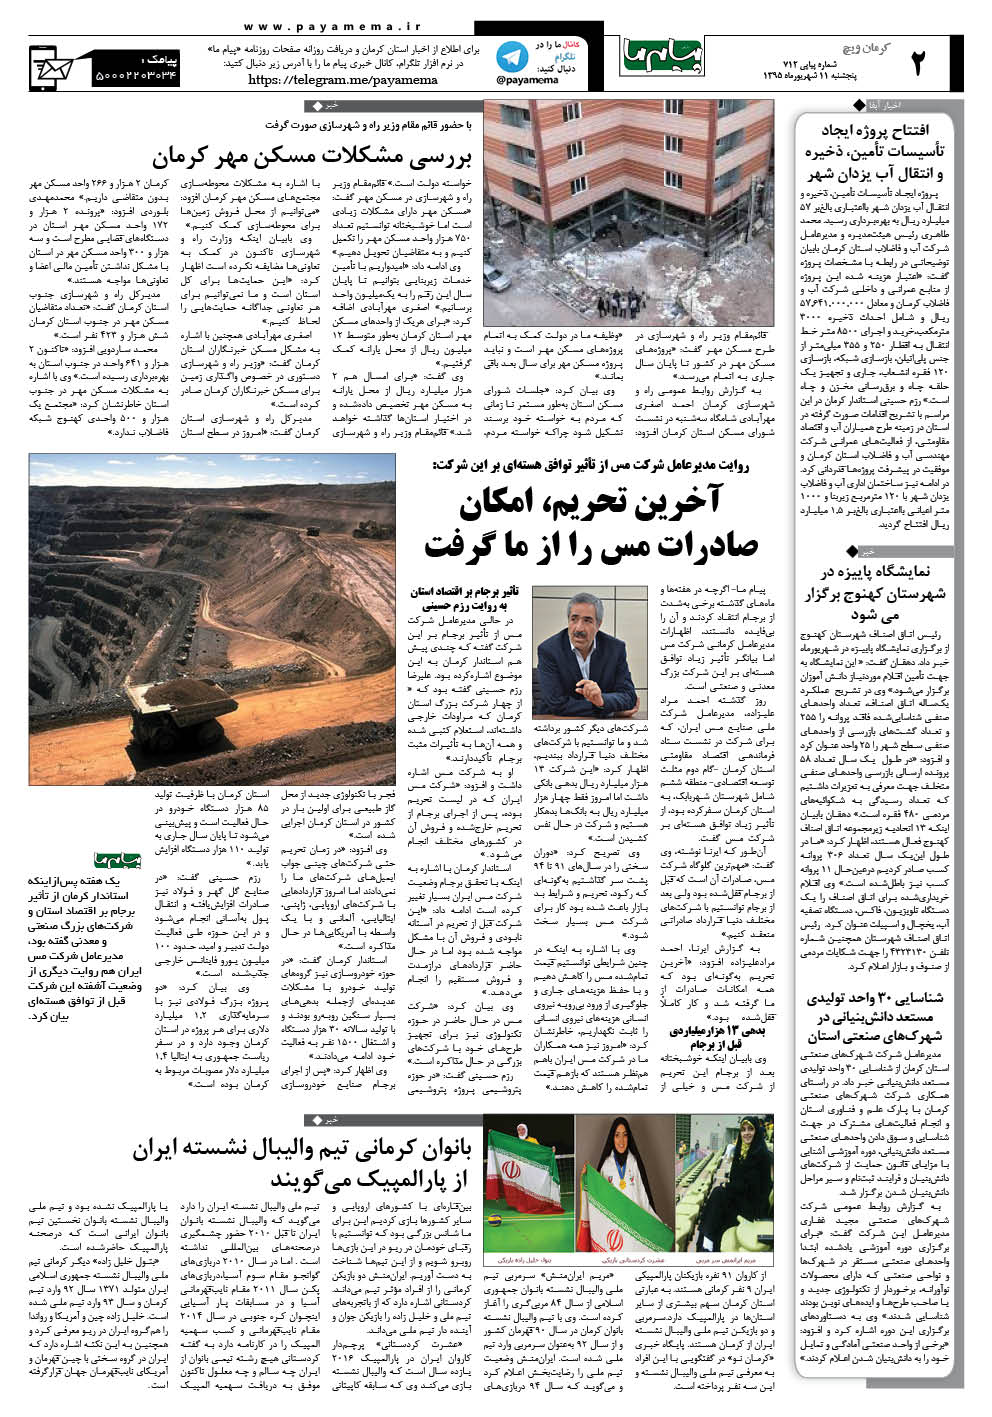 صفحه کرمان ویج شماره 712 روزنامه پیام ما